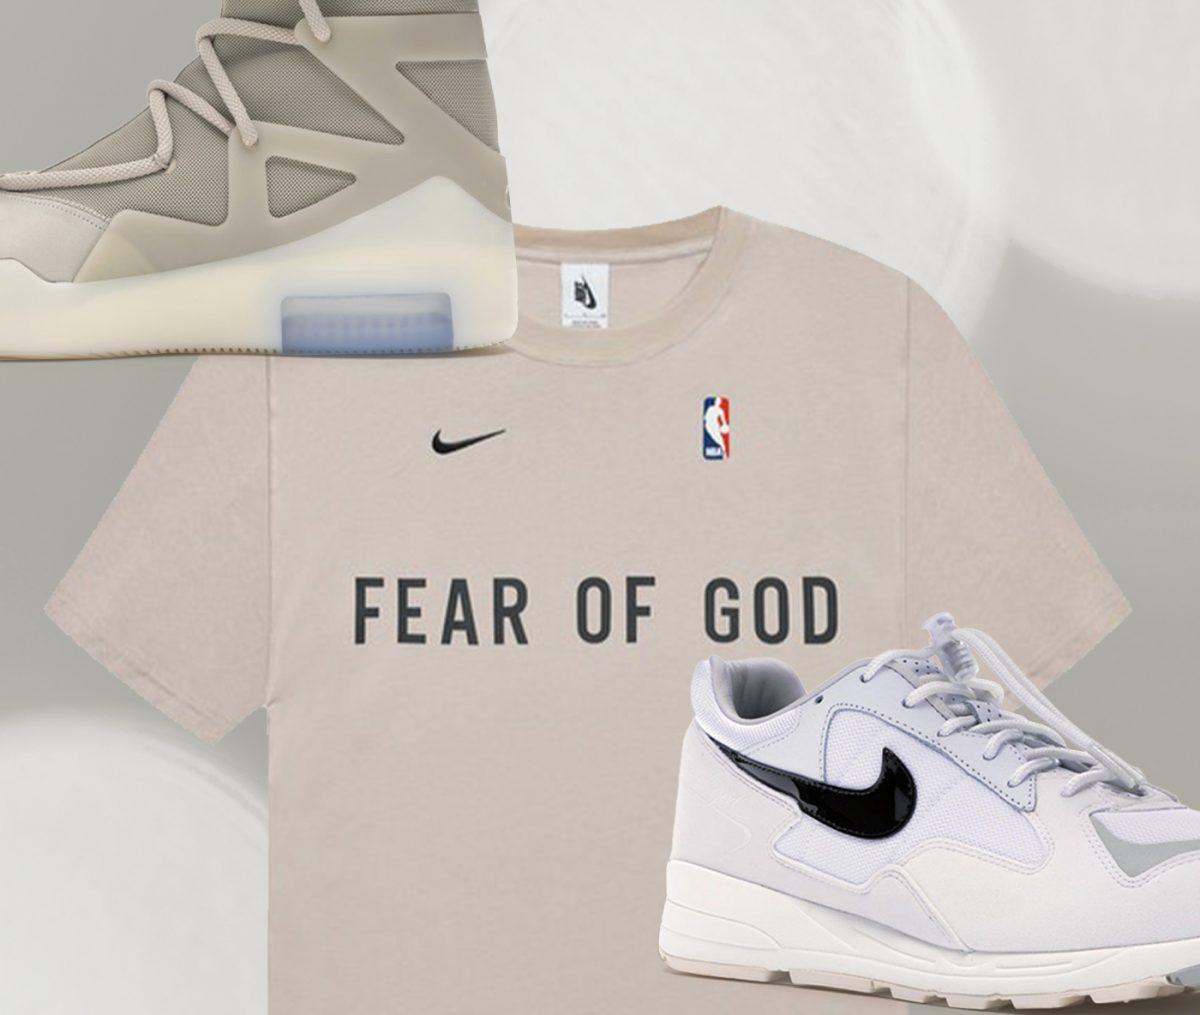 Fear Of God x Nike